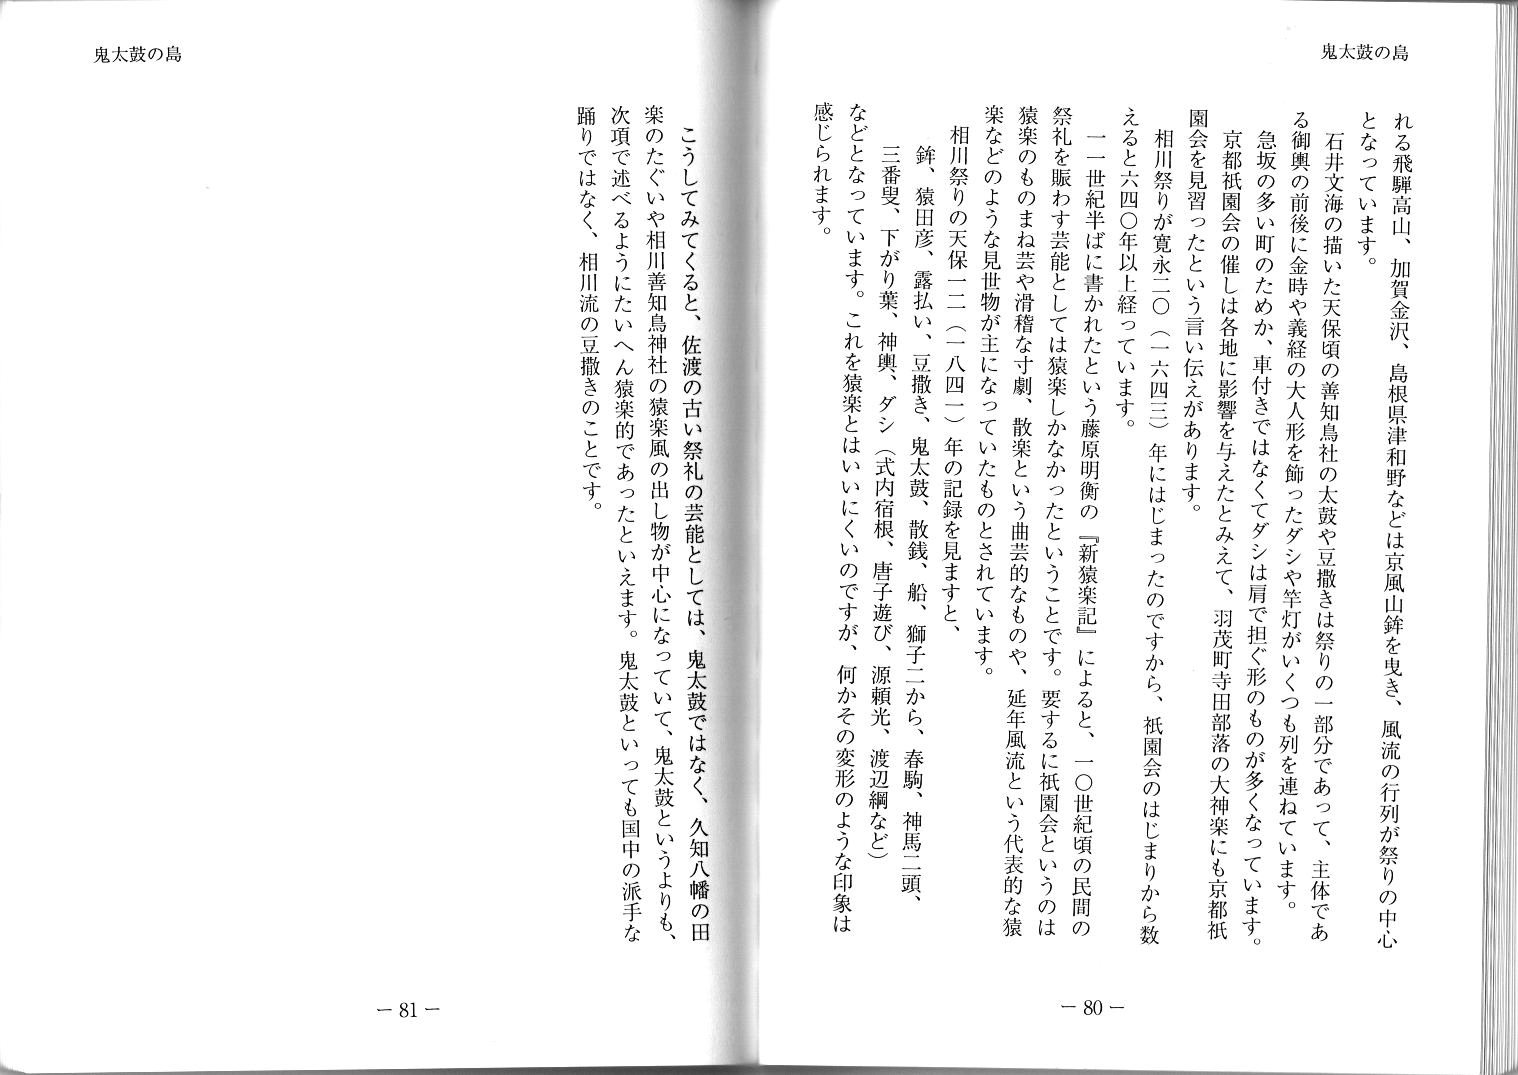 たち橘法老日本海文化研究所報告 第一集 令和元年7月 (3)